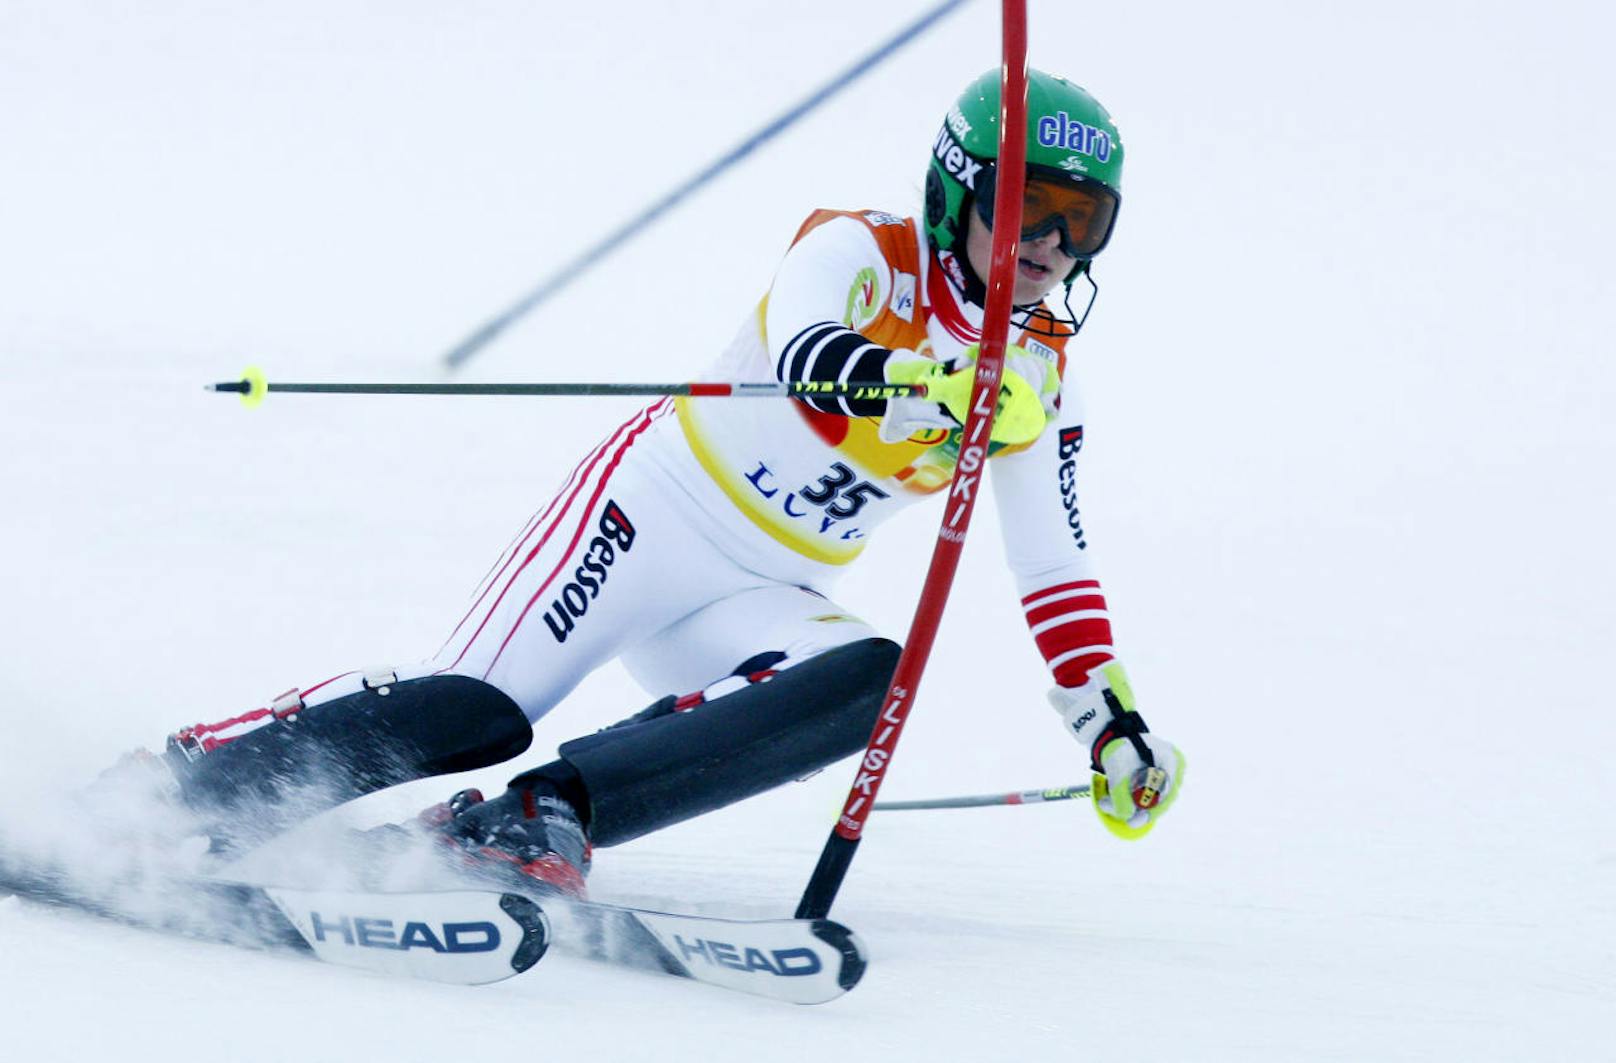 Auch die große Anna Veith hat einst klein begonnen - und vor allem unter einem anderen Namen. Am 11. November 2006 bestritt sie als Anna Fenninger ihr erstes Weltcup-Rennen. Beim Slalom im finnischen Levi verpasste sie den zweiten Durchgang.